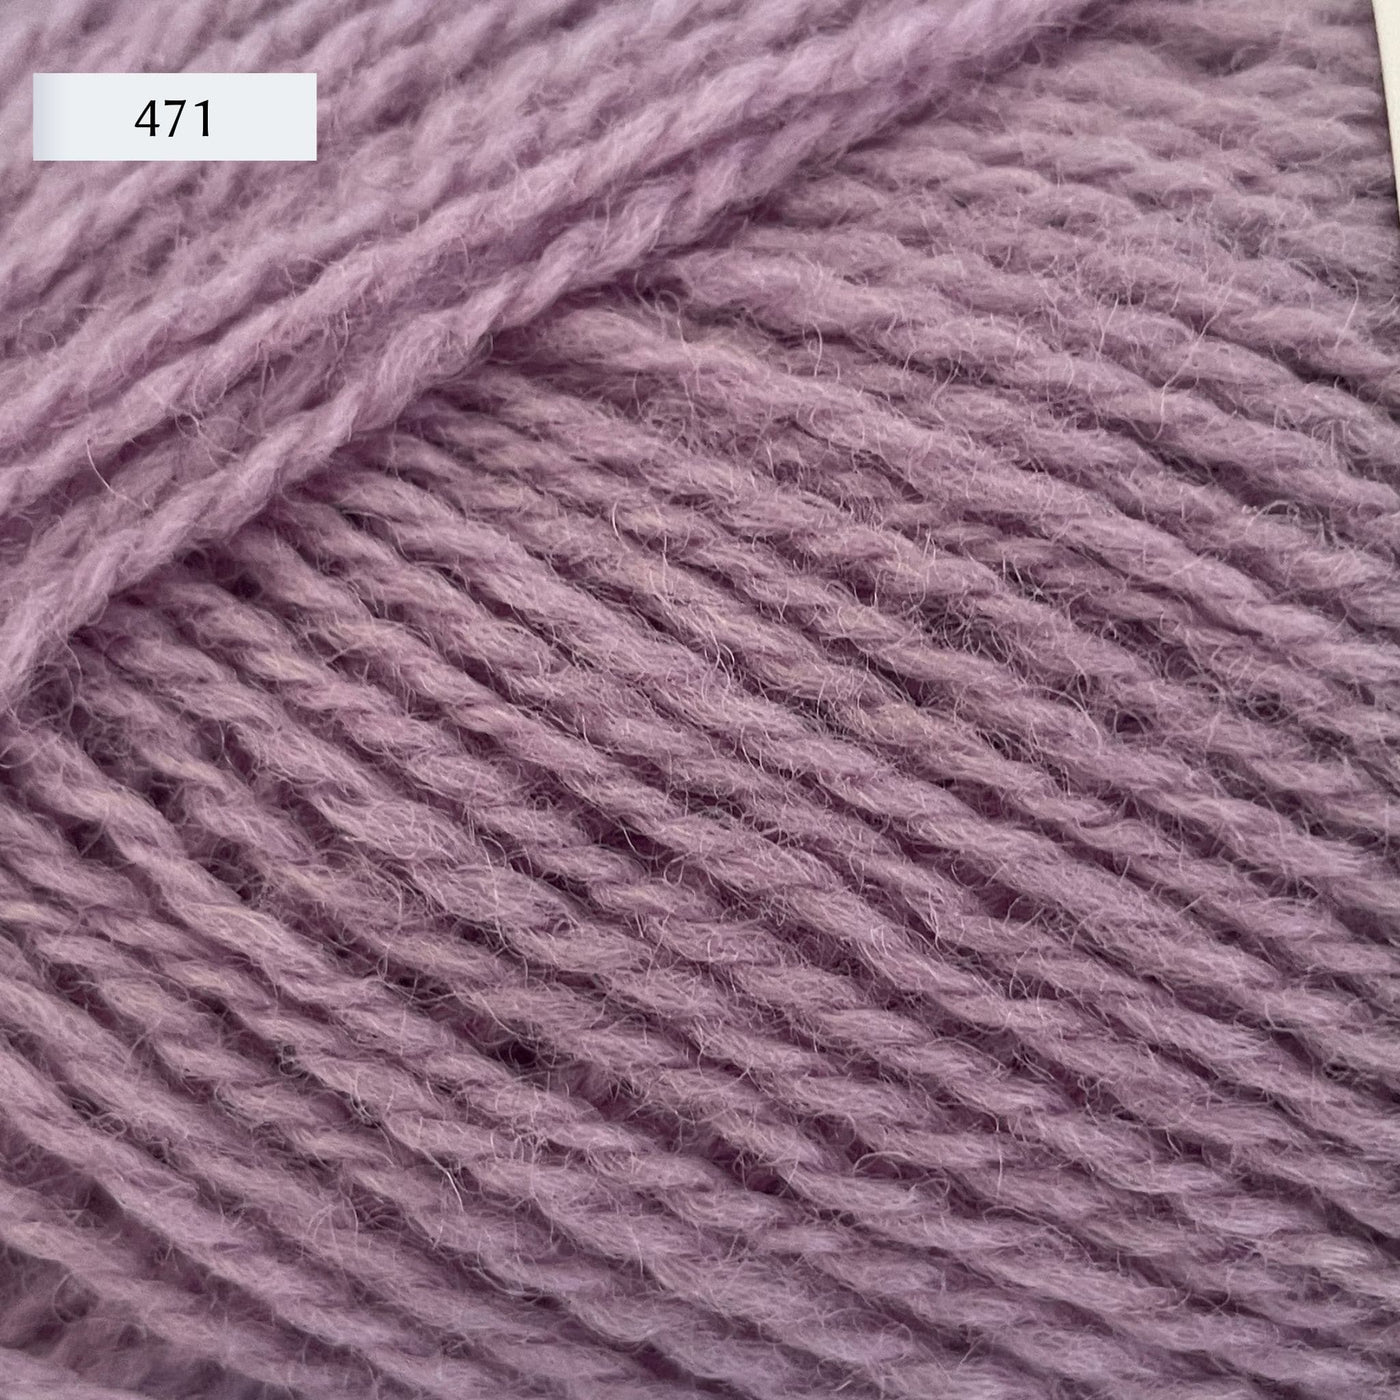 Rauma Finullgarn, a fingering/sport weight yarn, in color 471, a lavender